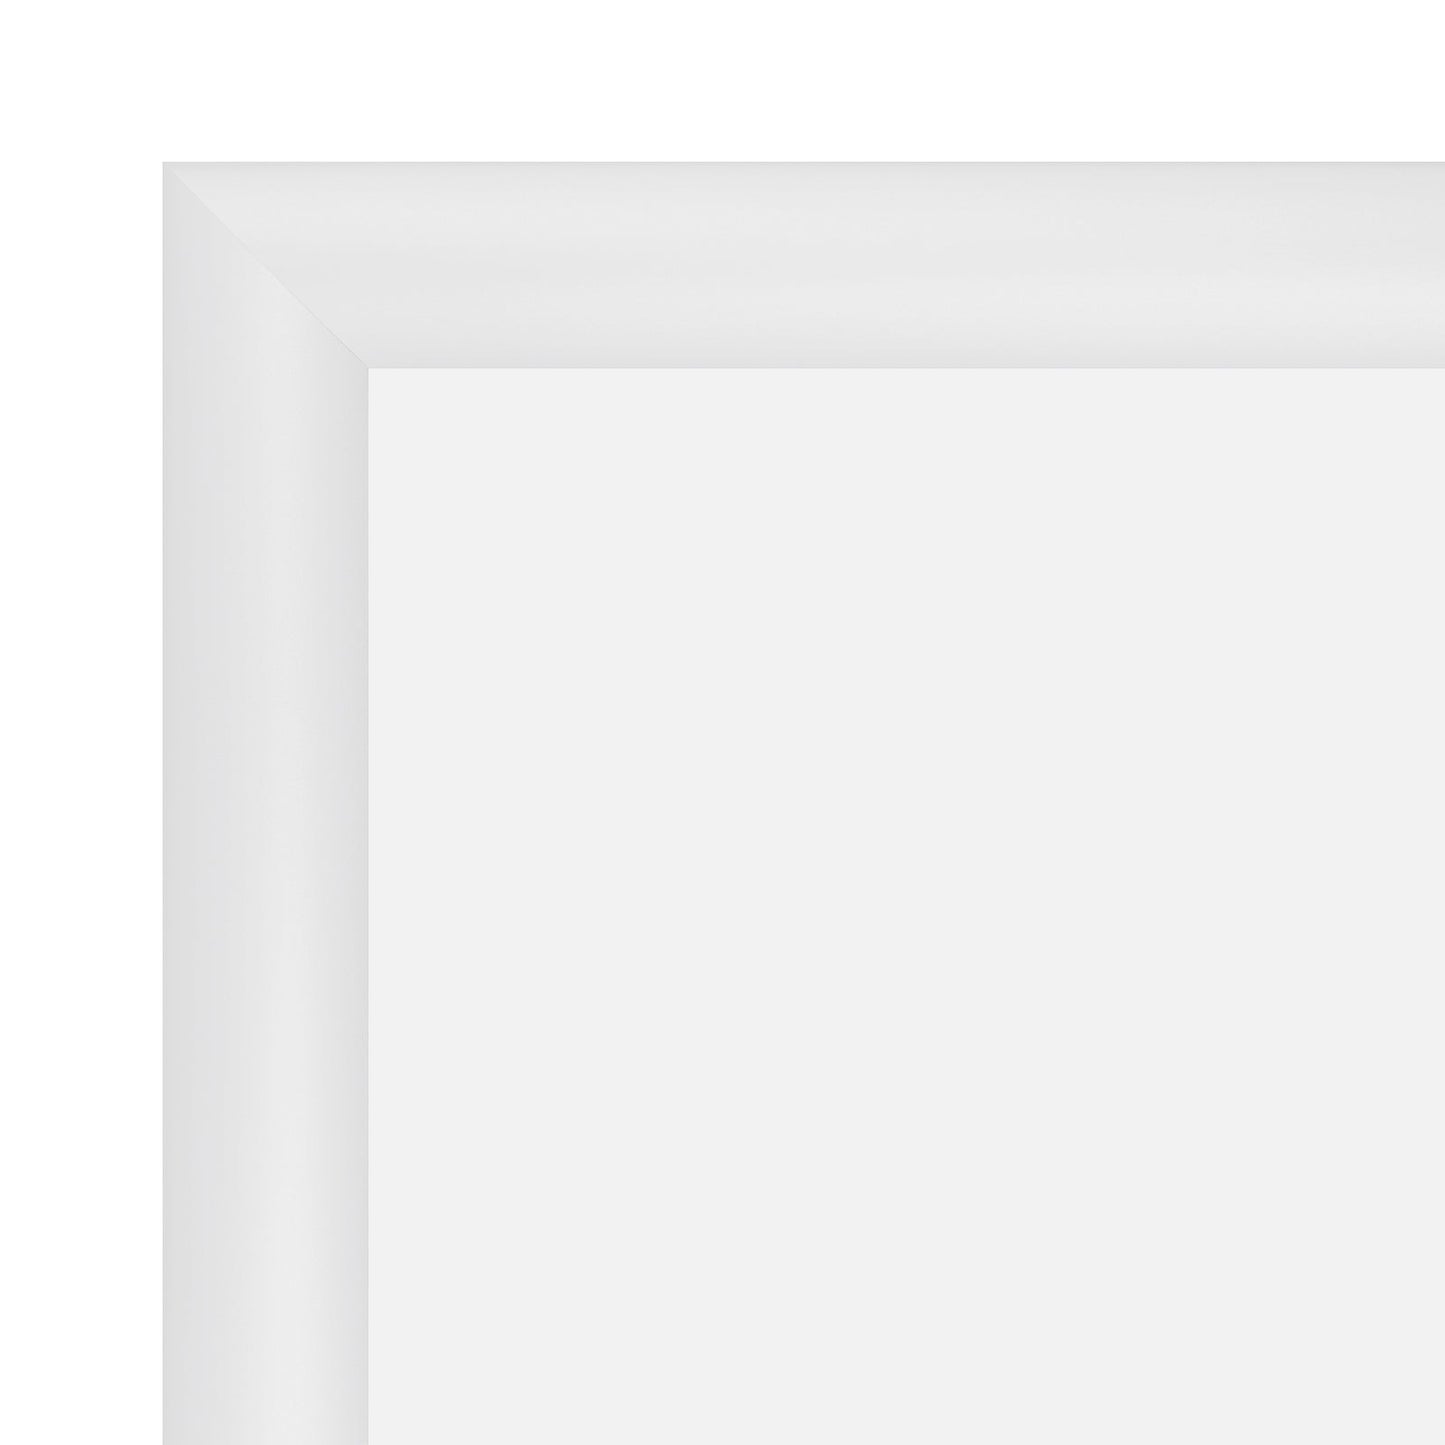 10x12 White SnapeZo® Snap Frame - 1.2" Profile